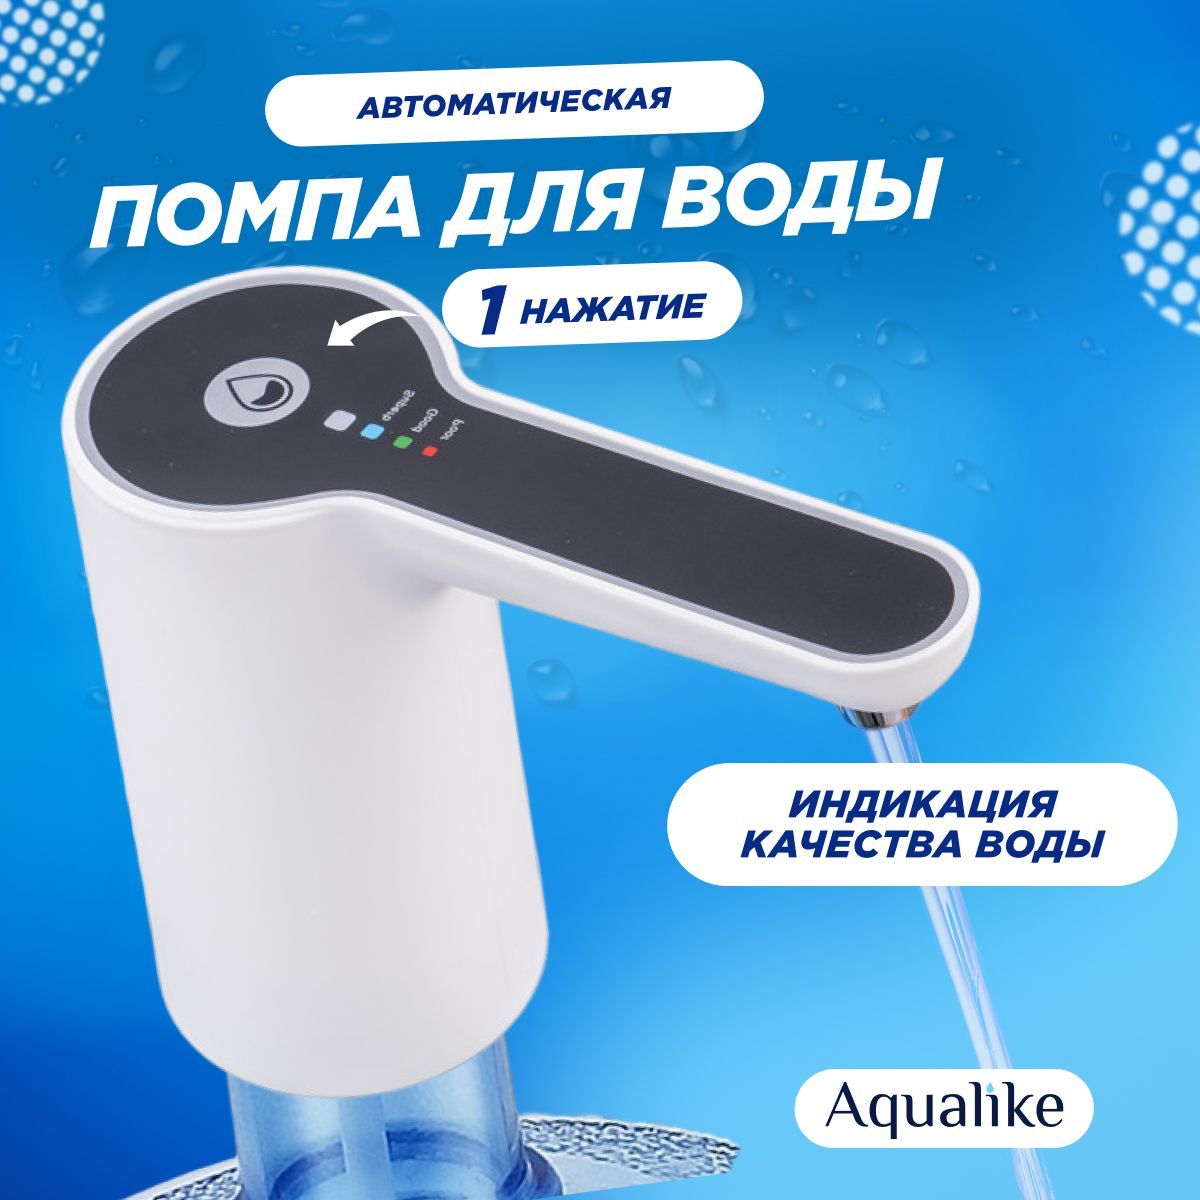 Помпа для воды Aqualike W1, 19л электрическая, с индикацией качества воды